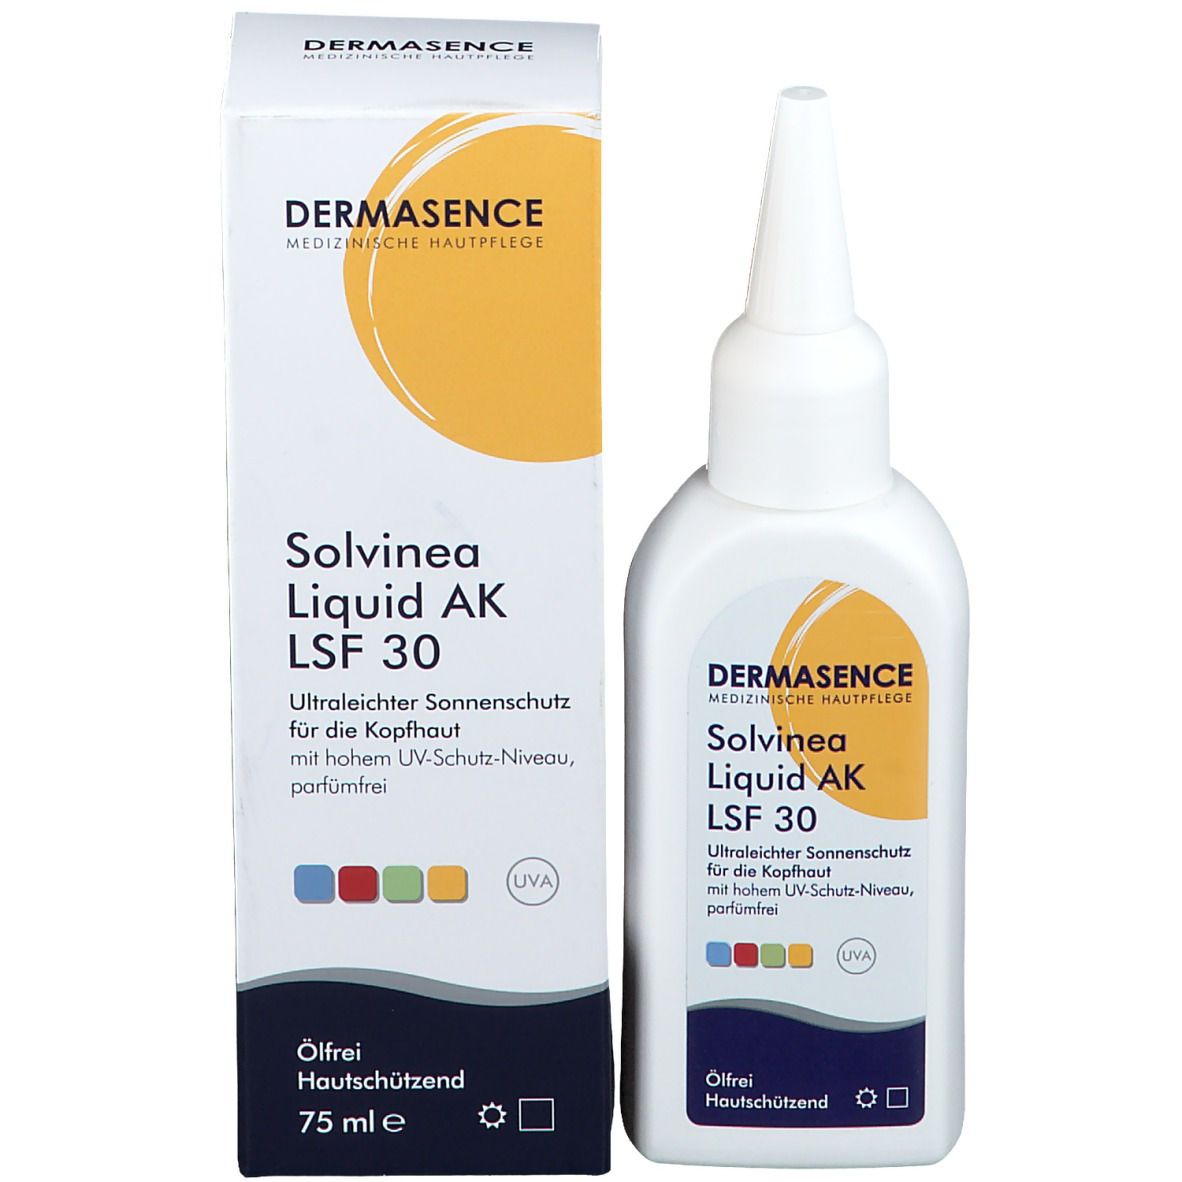 Dermasence Solvinea Liquid AK LSF 30